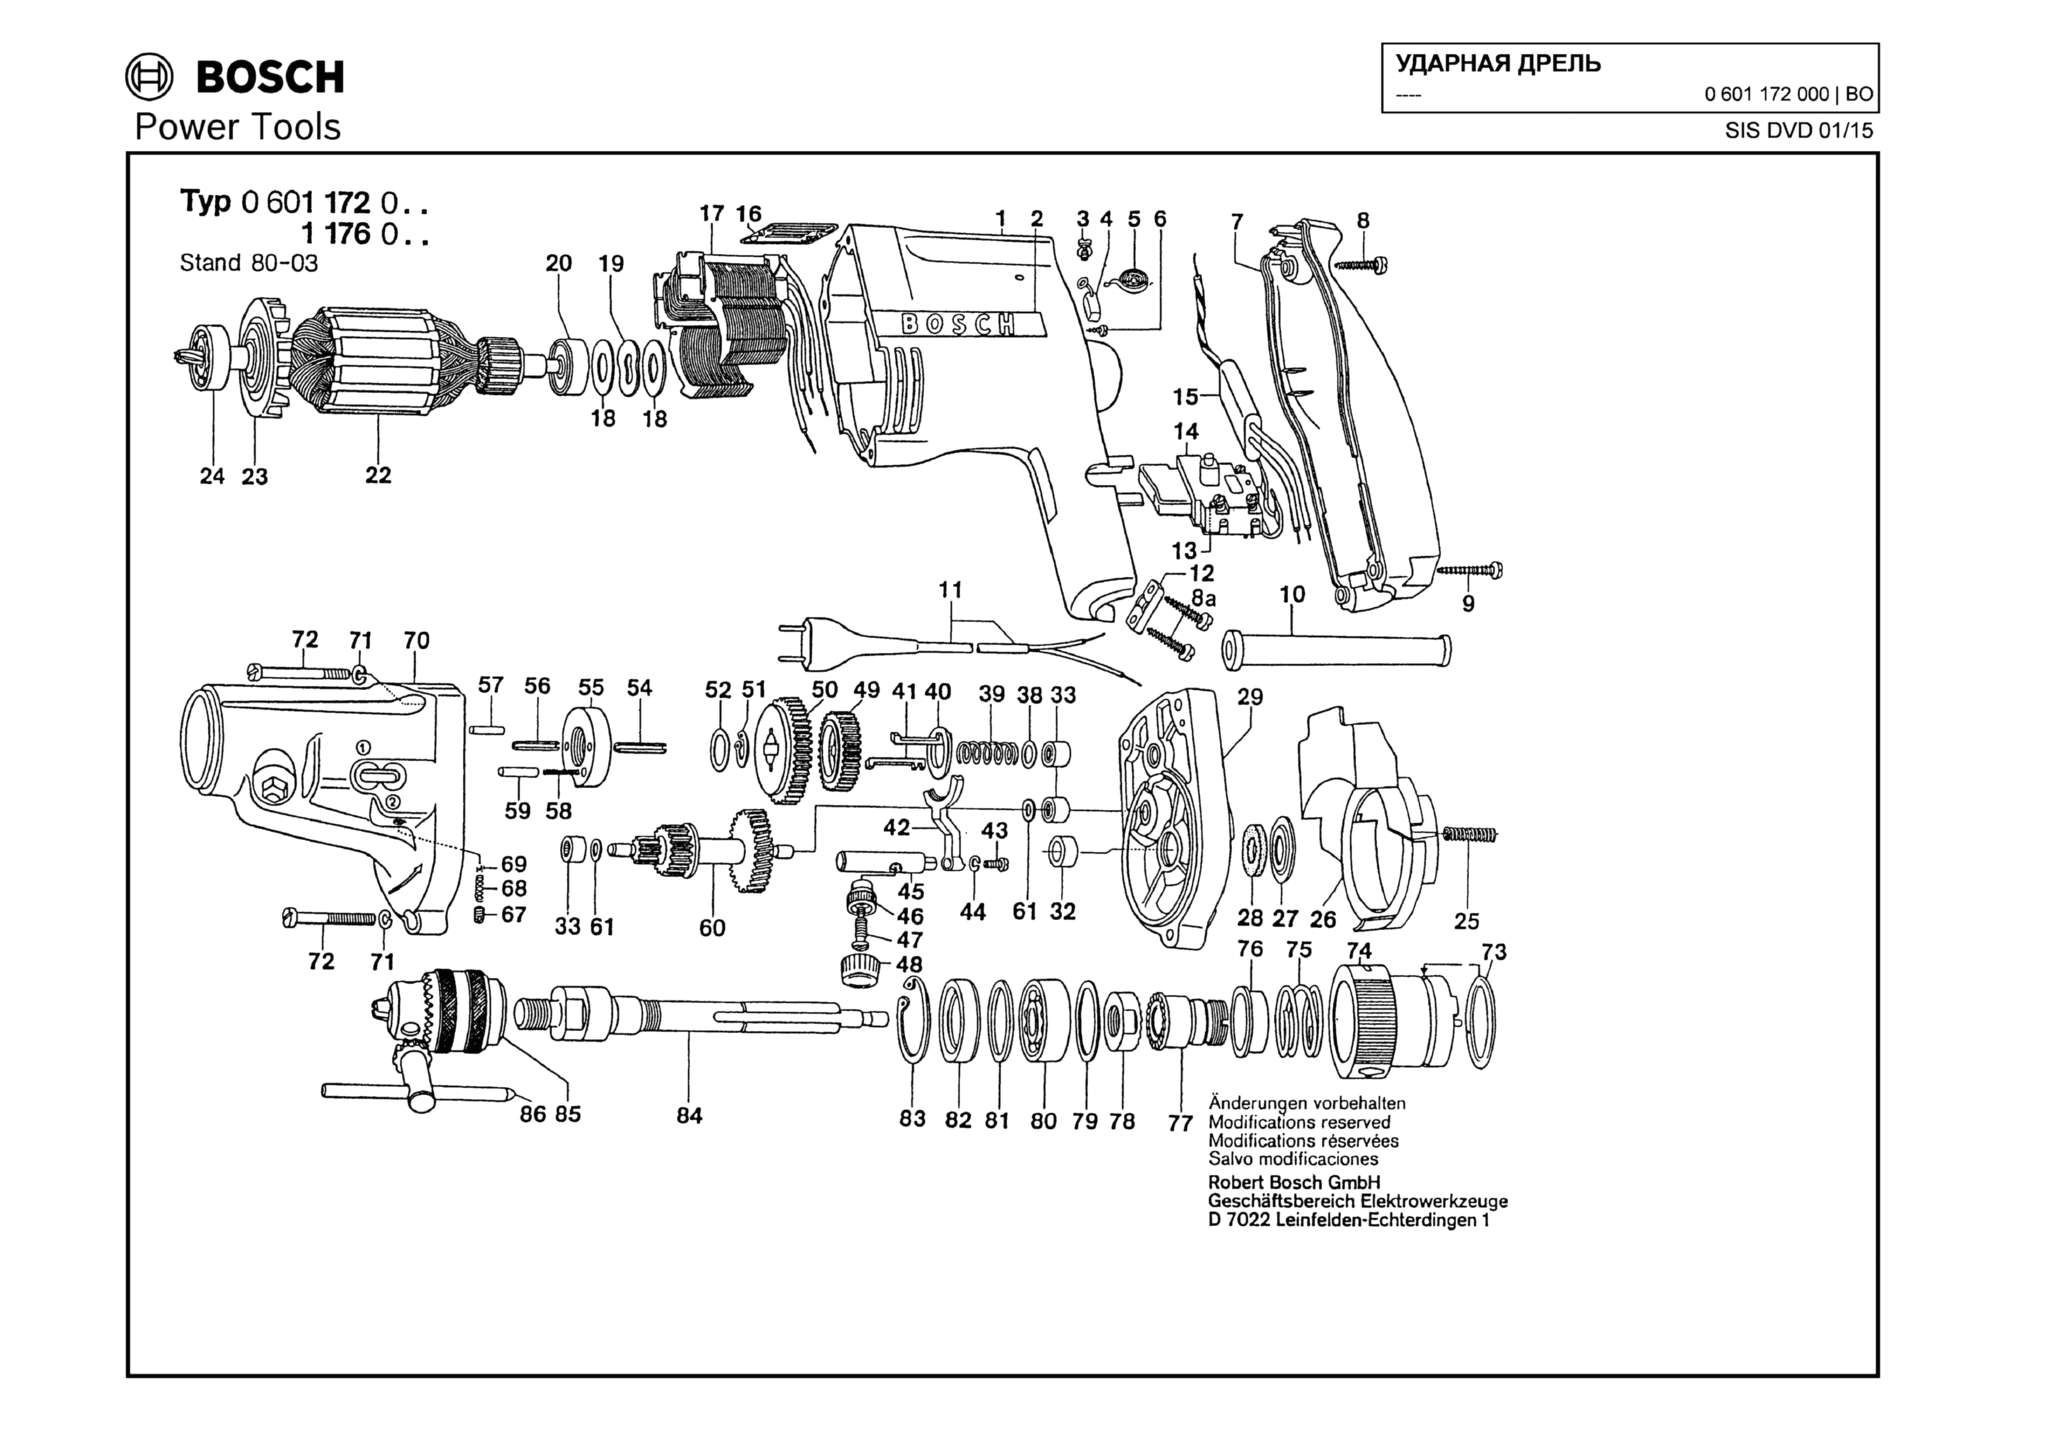 Запчасти, схема и деталировка Bosch (ТИП 0601172000)